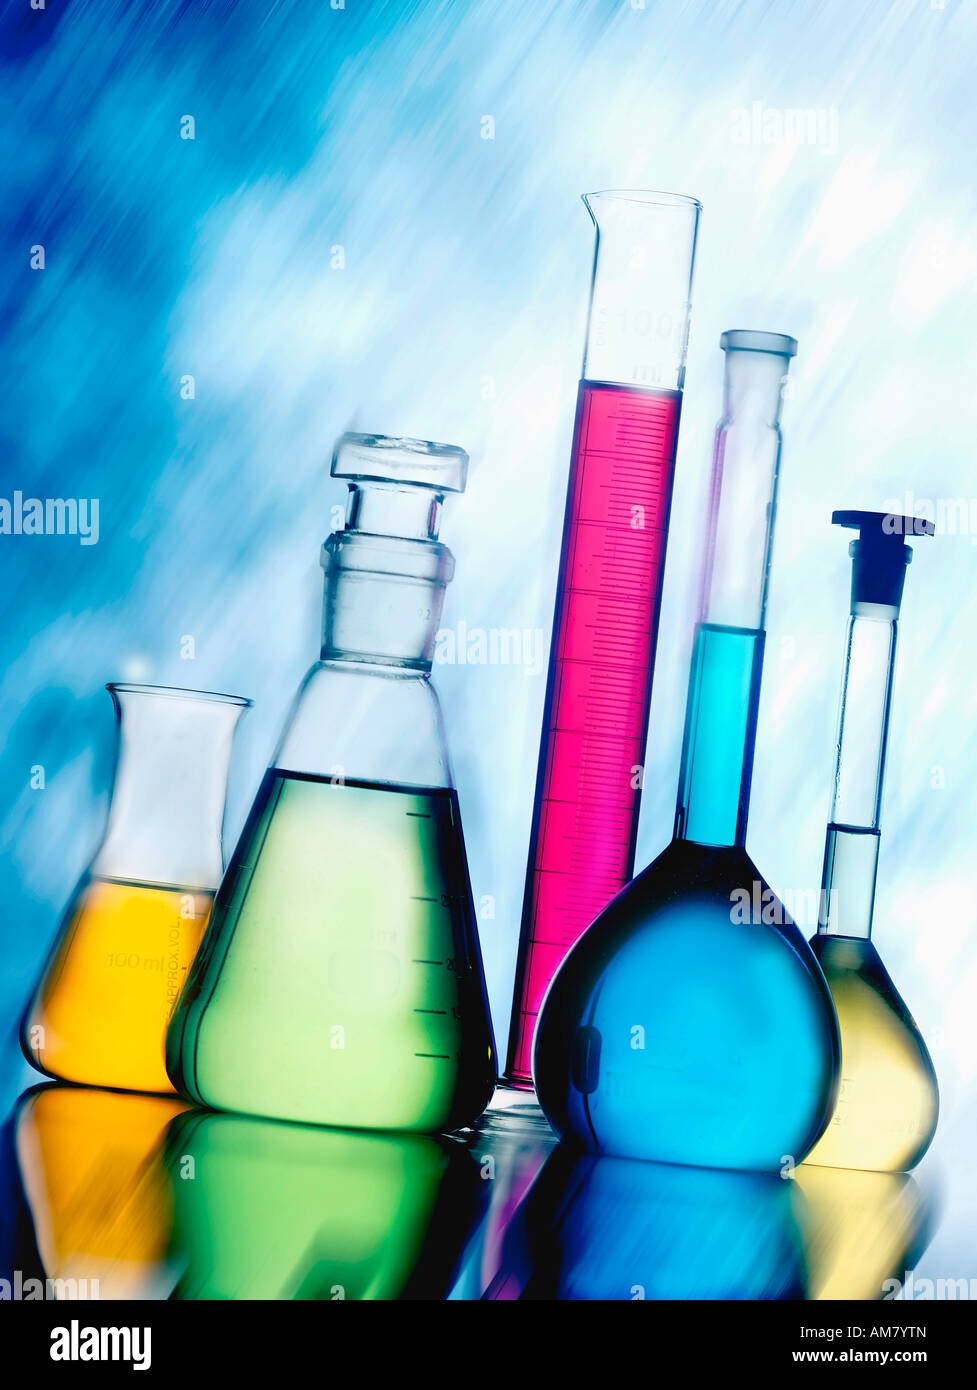 Chemistry laboratory equipment Stock Photo